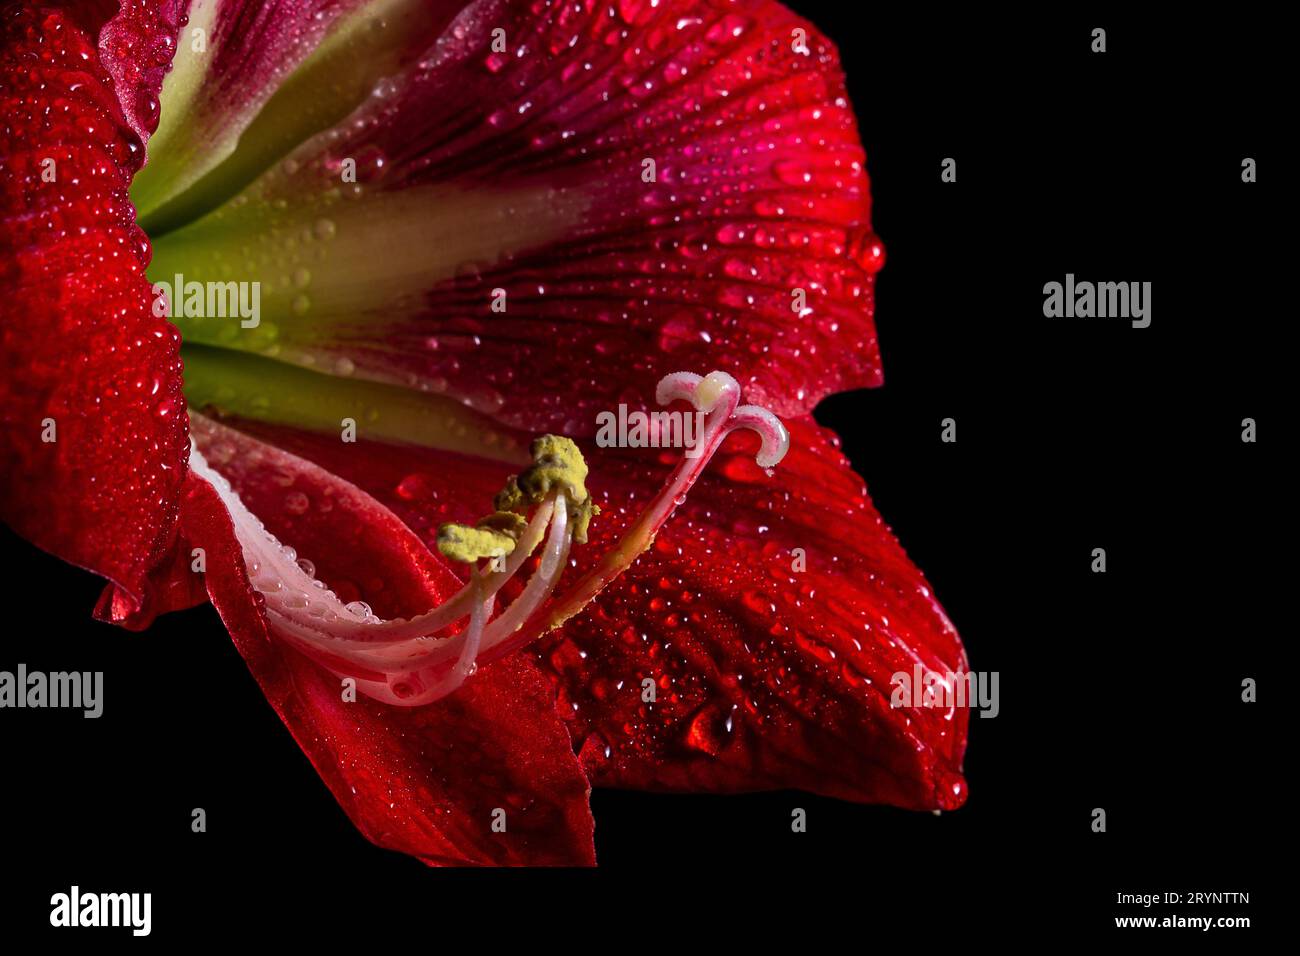 Leuchtend rote Amaryllis-Blume auf schwarzem Hintergrund, die zarte Schönheit der Natur zeigt. Stockfoto